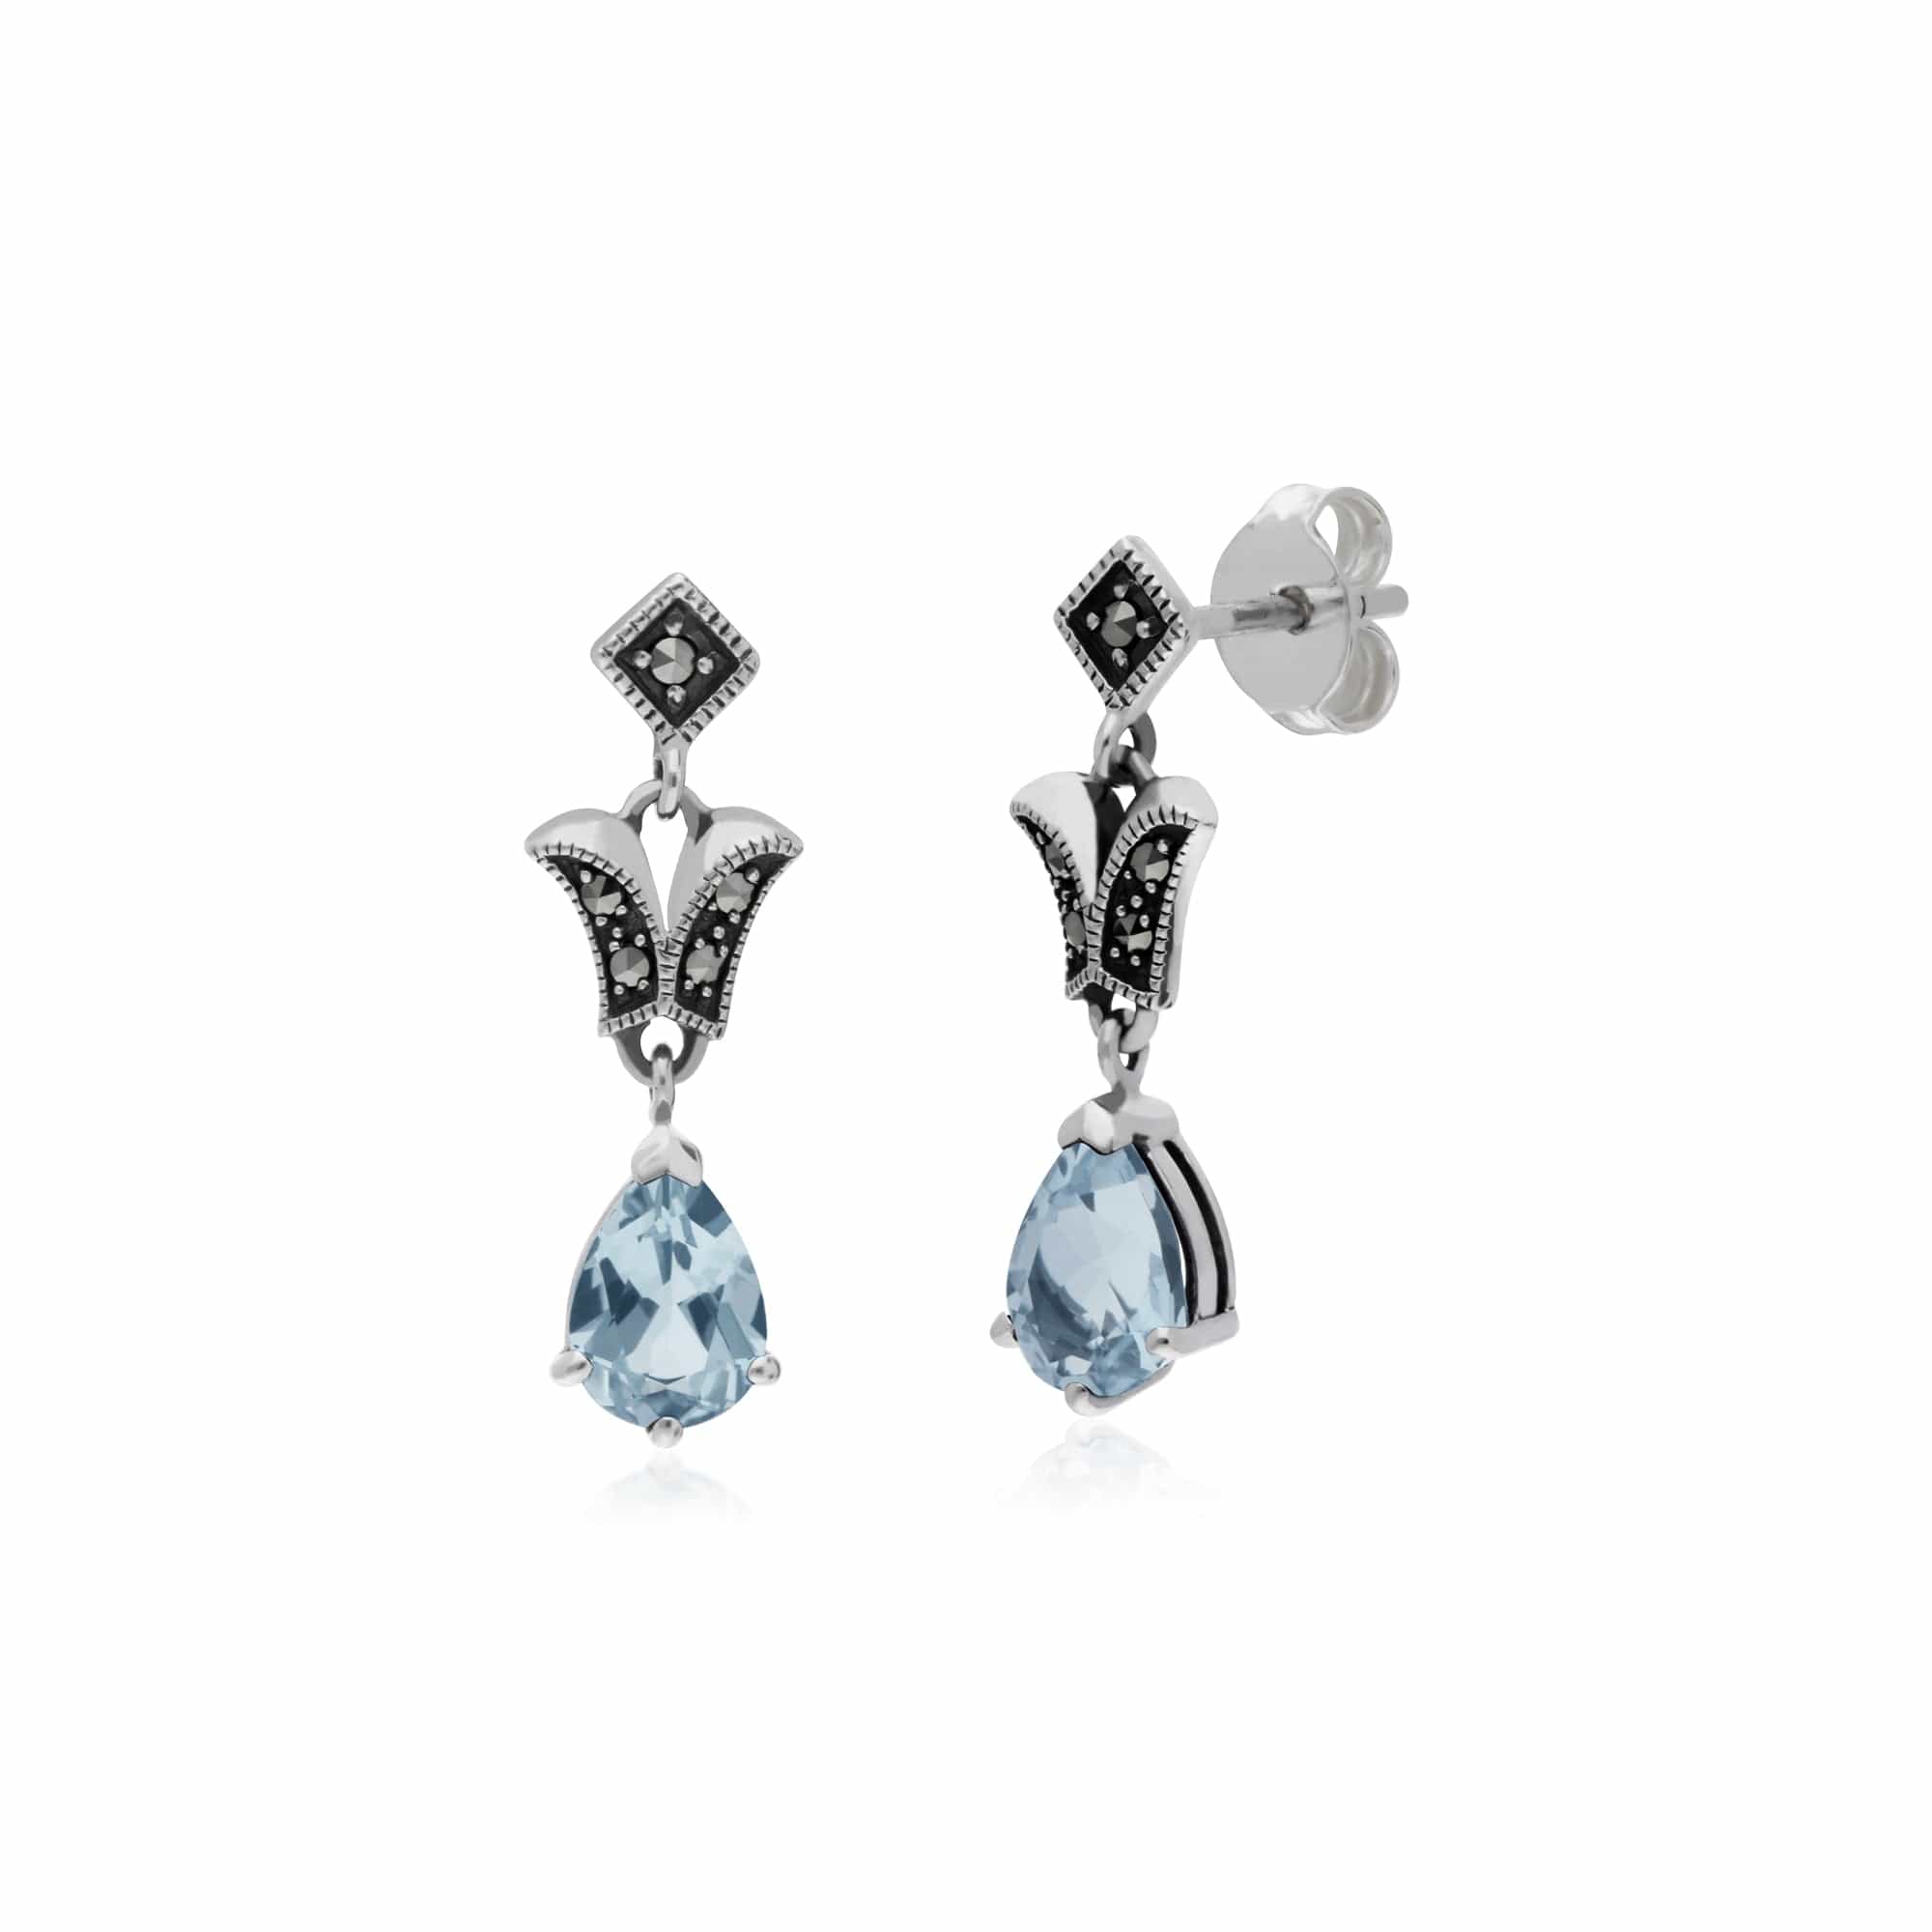 214E859602925 Art Nouveau Style Pear Blue Topaz & Marcasite Drop Earrings in 925 Sterling Silver 1